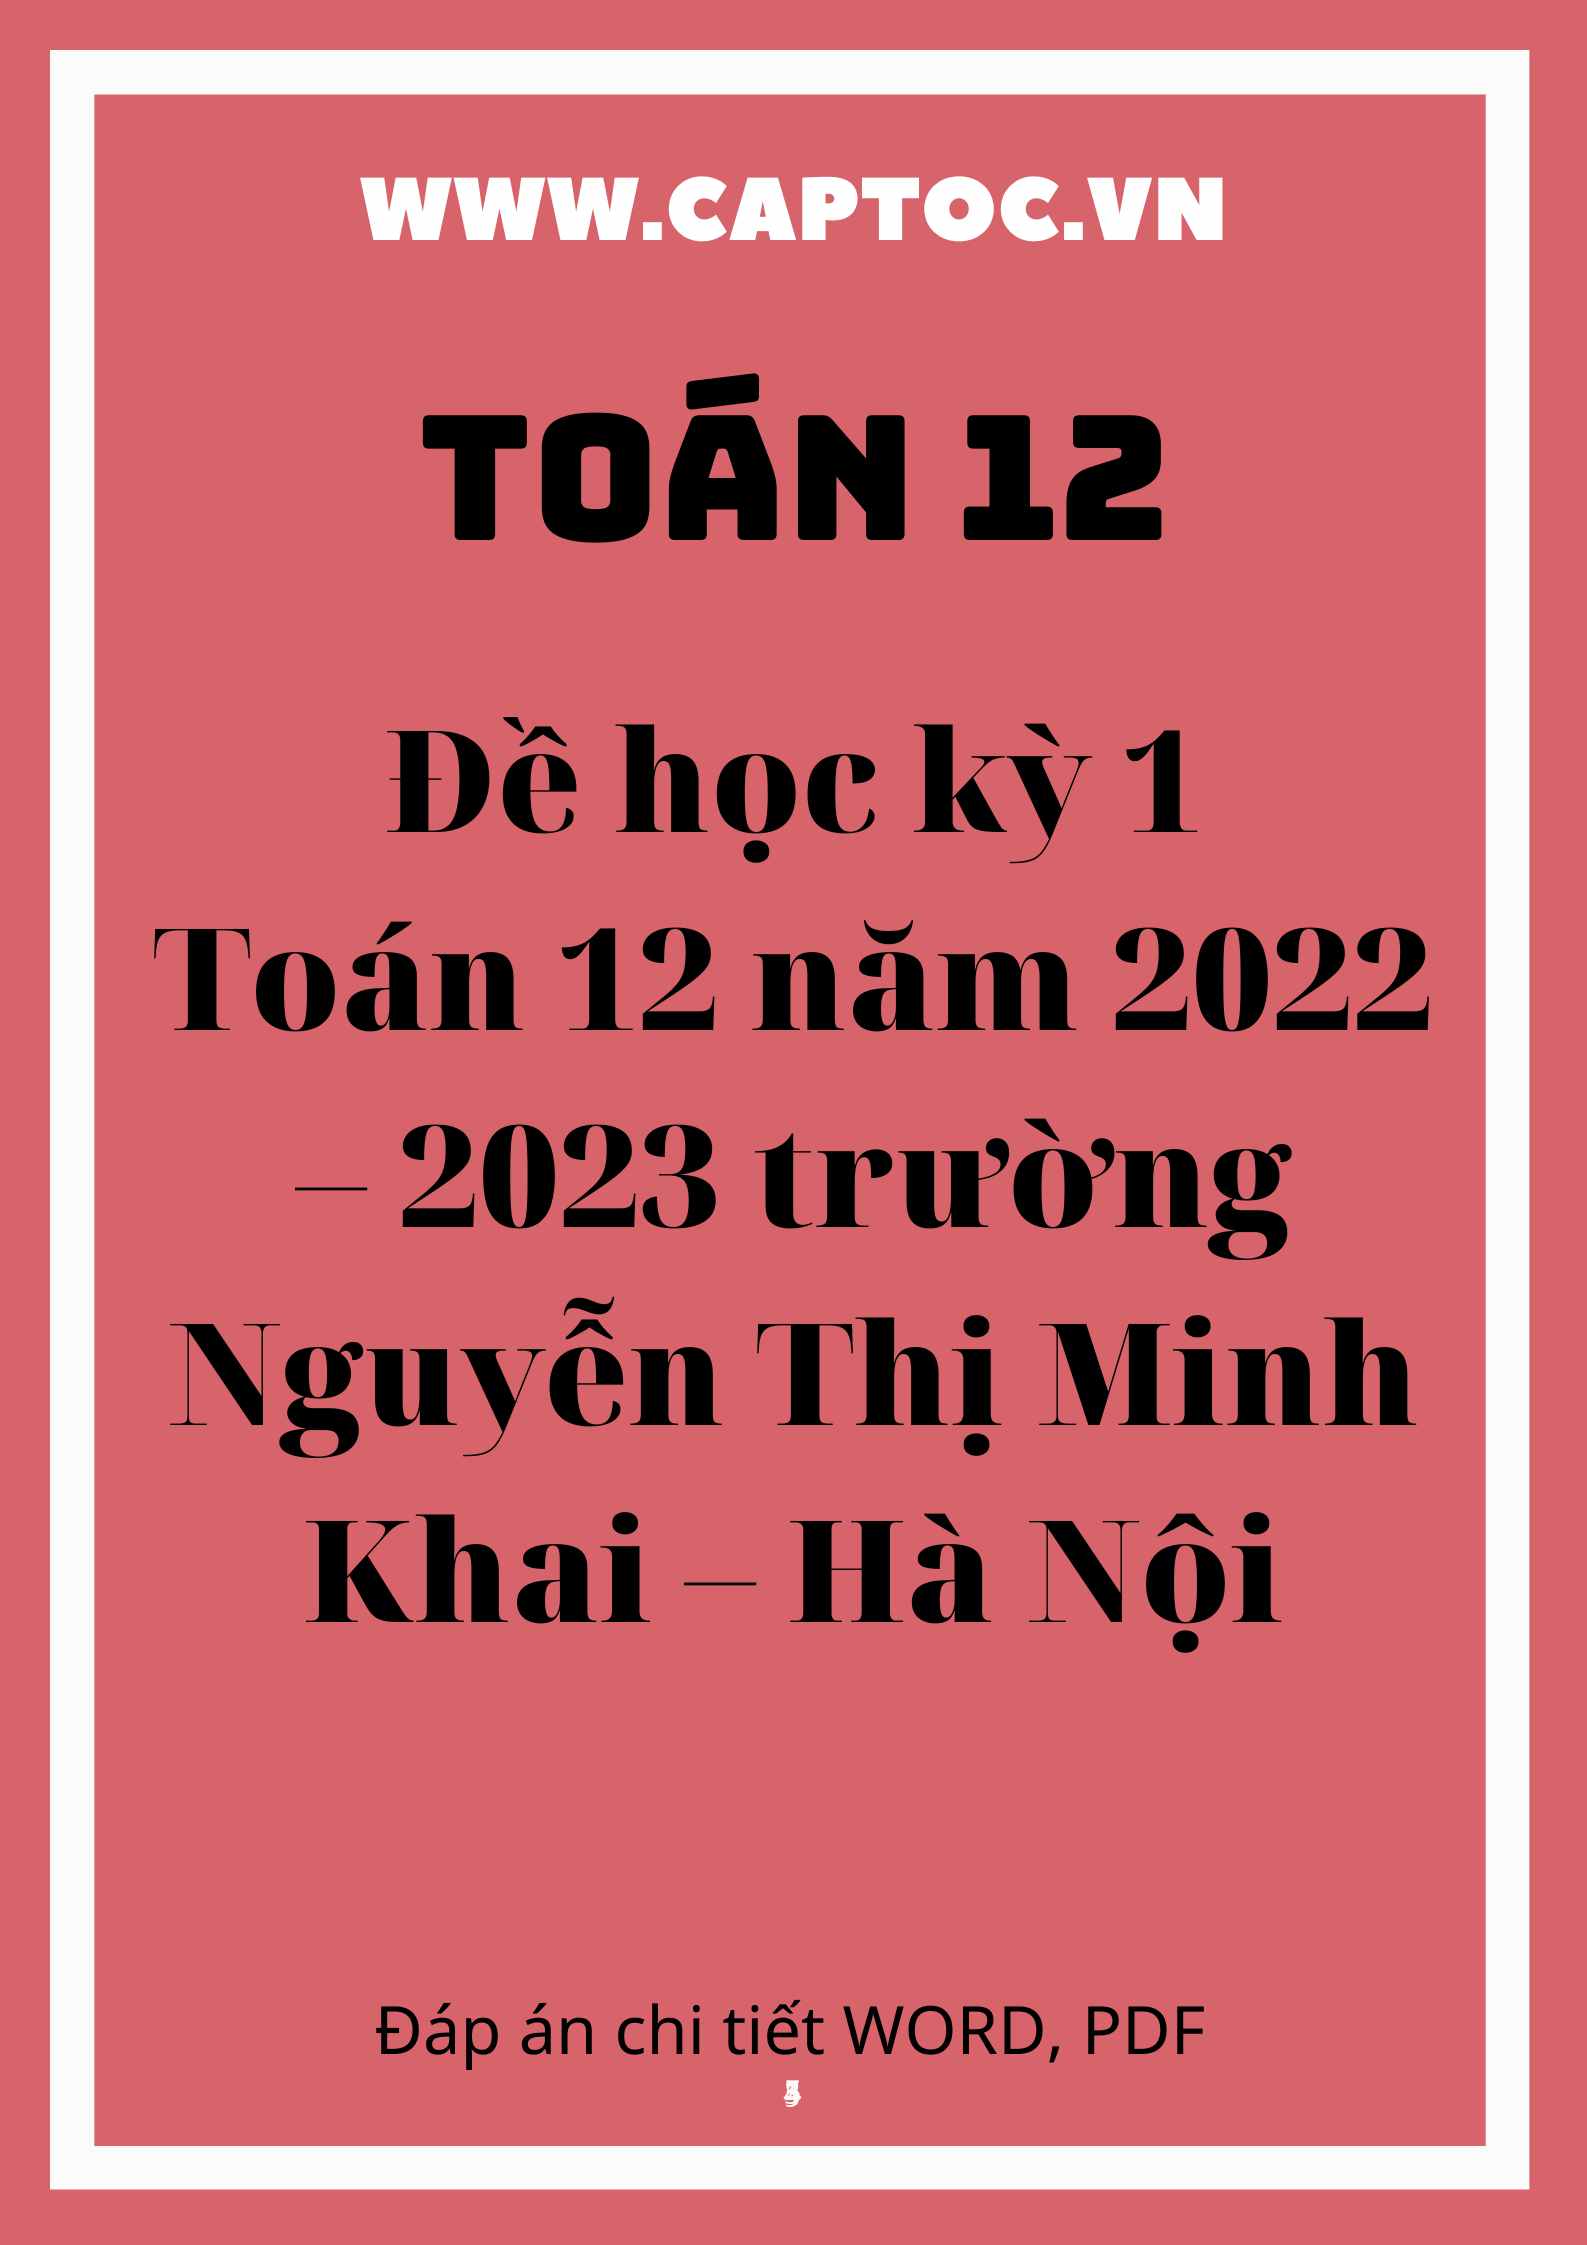 Đề học kỳ 1 Toán 12 năm 2022 – 2023 trường Nguyễn Thị Minh Khai – Hà Nội